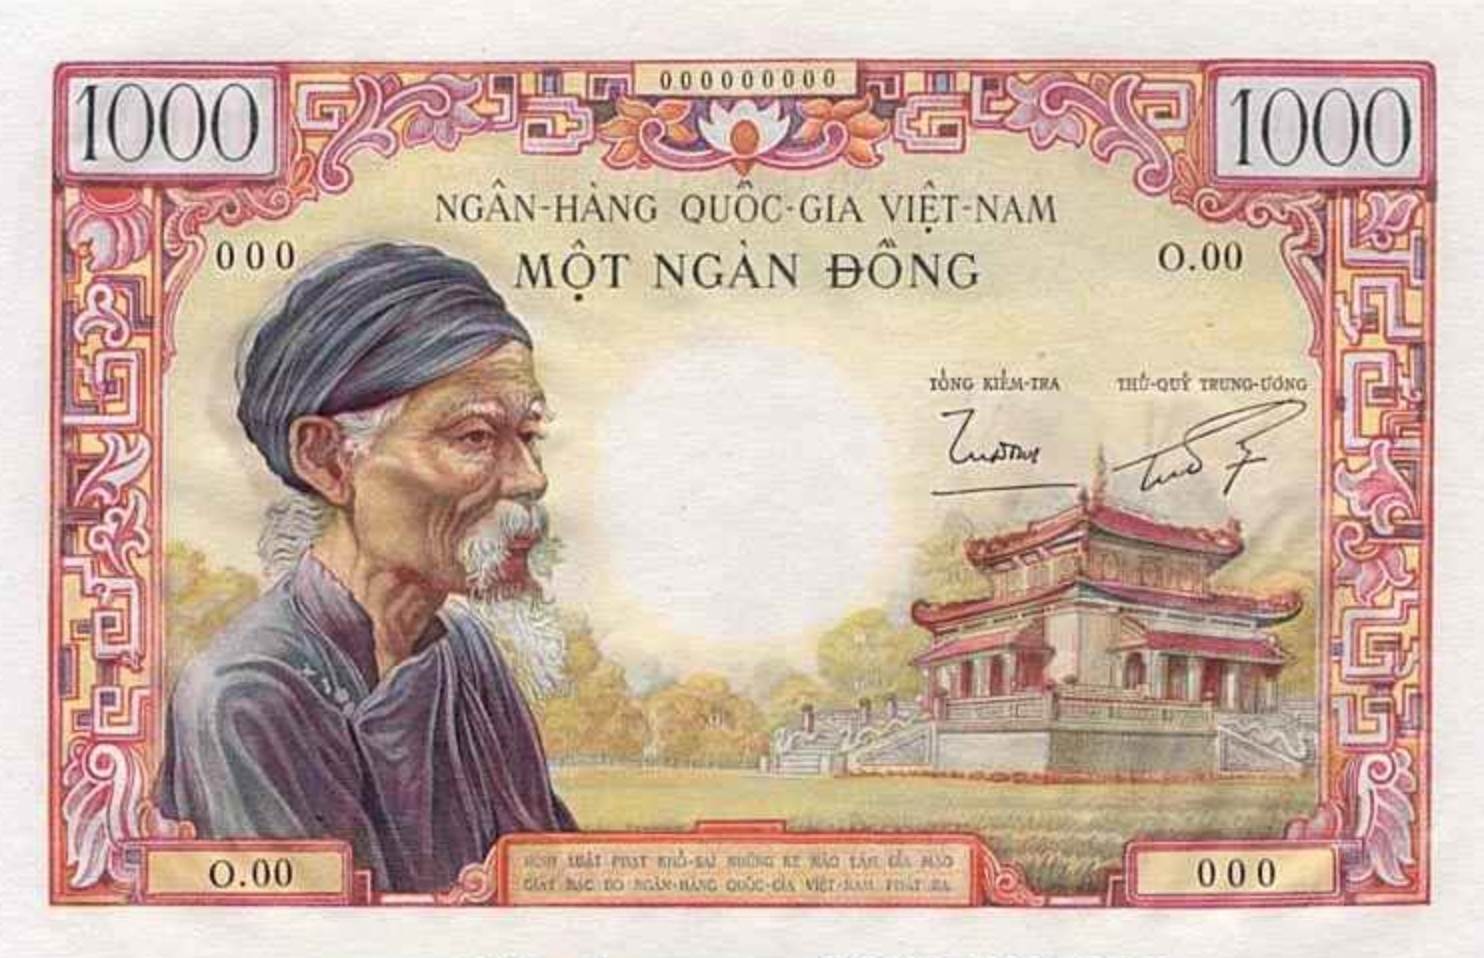 Bộ sưu tập tiền Việt Nam Cộng Hòa là một kho tàng kiến thức về lịch sử và văn hoá của đất nước. Bằng những hình ảnh chân thật về các loại tiền cổ, bạn có thể khám phá và thưởng thức những giá trị văn hoá của Việt Nam.